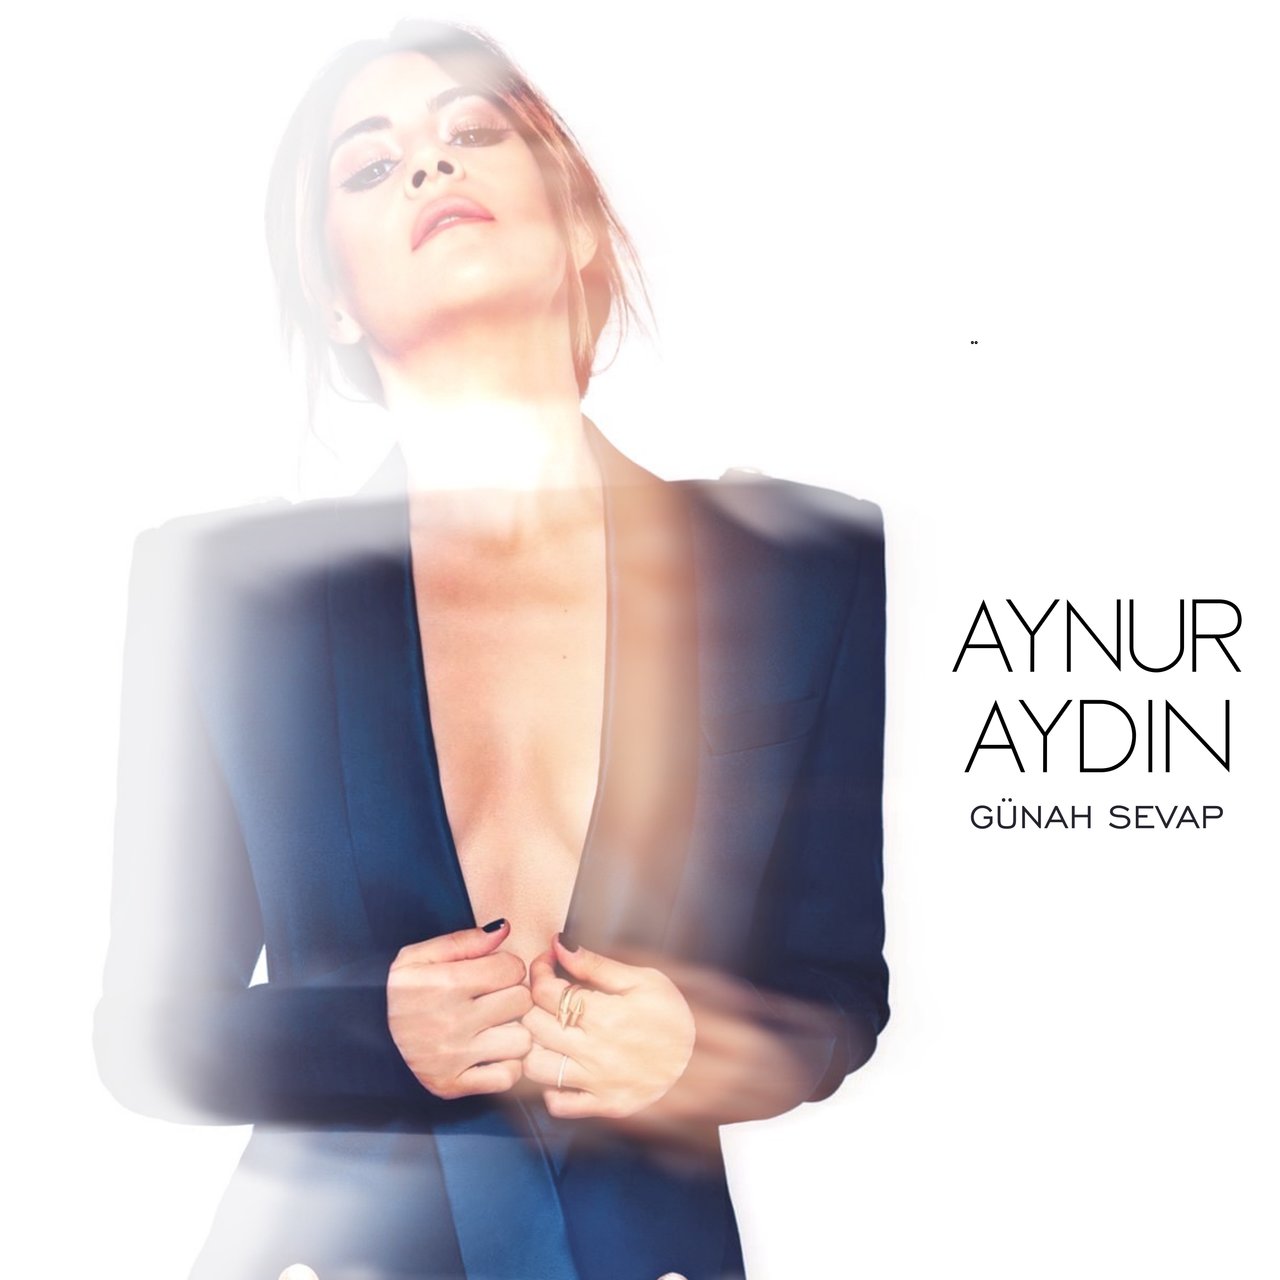 Aynur Aydın Günah Sevap cover artwork